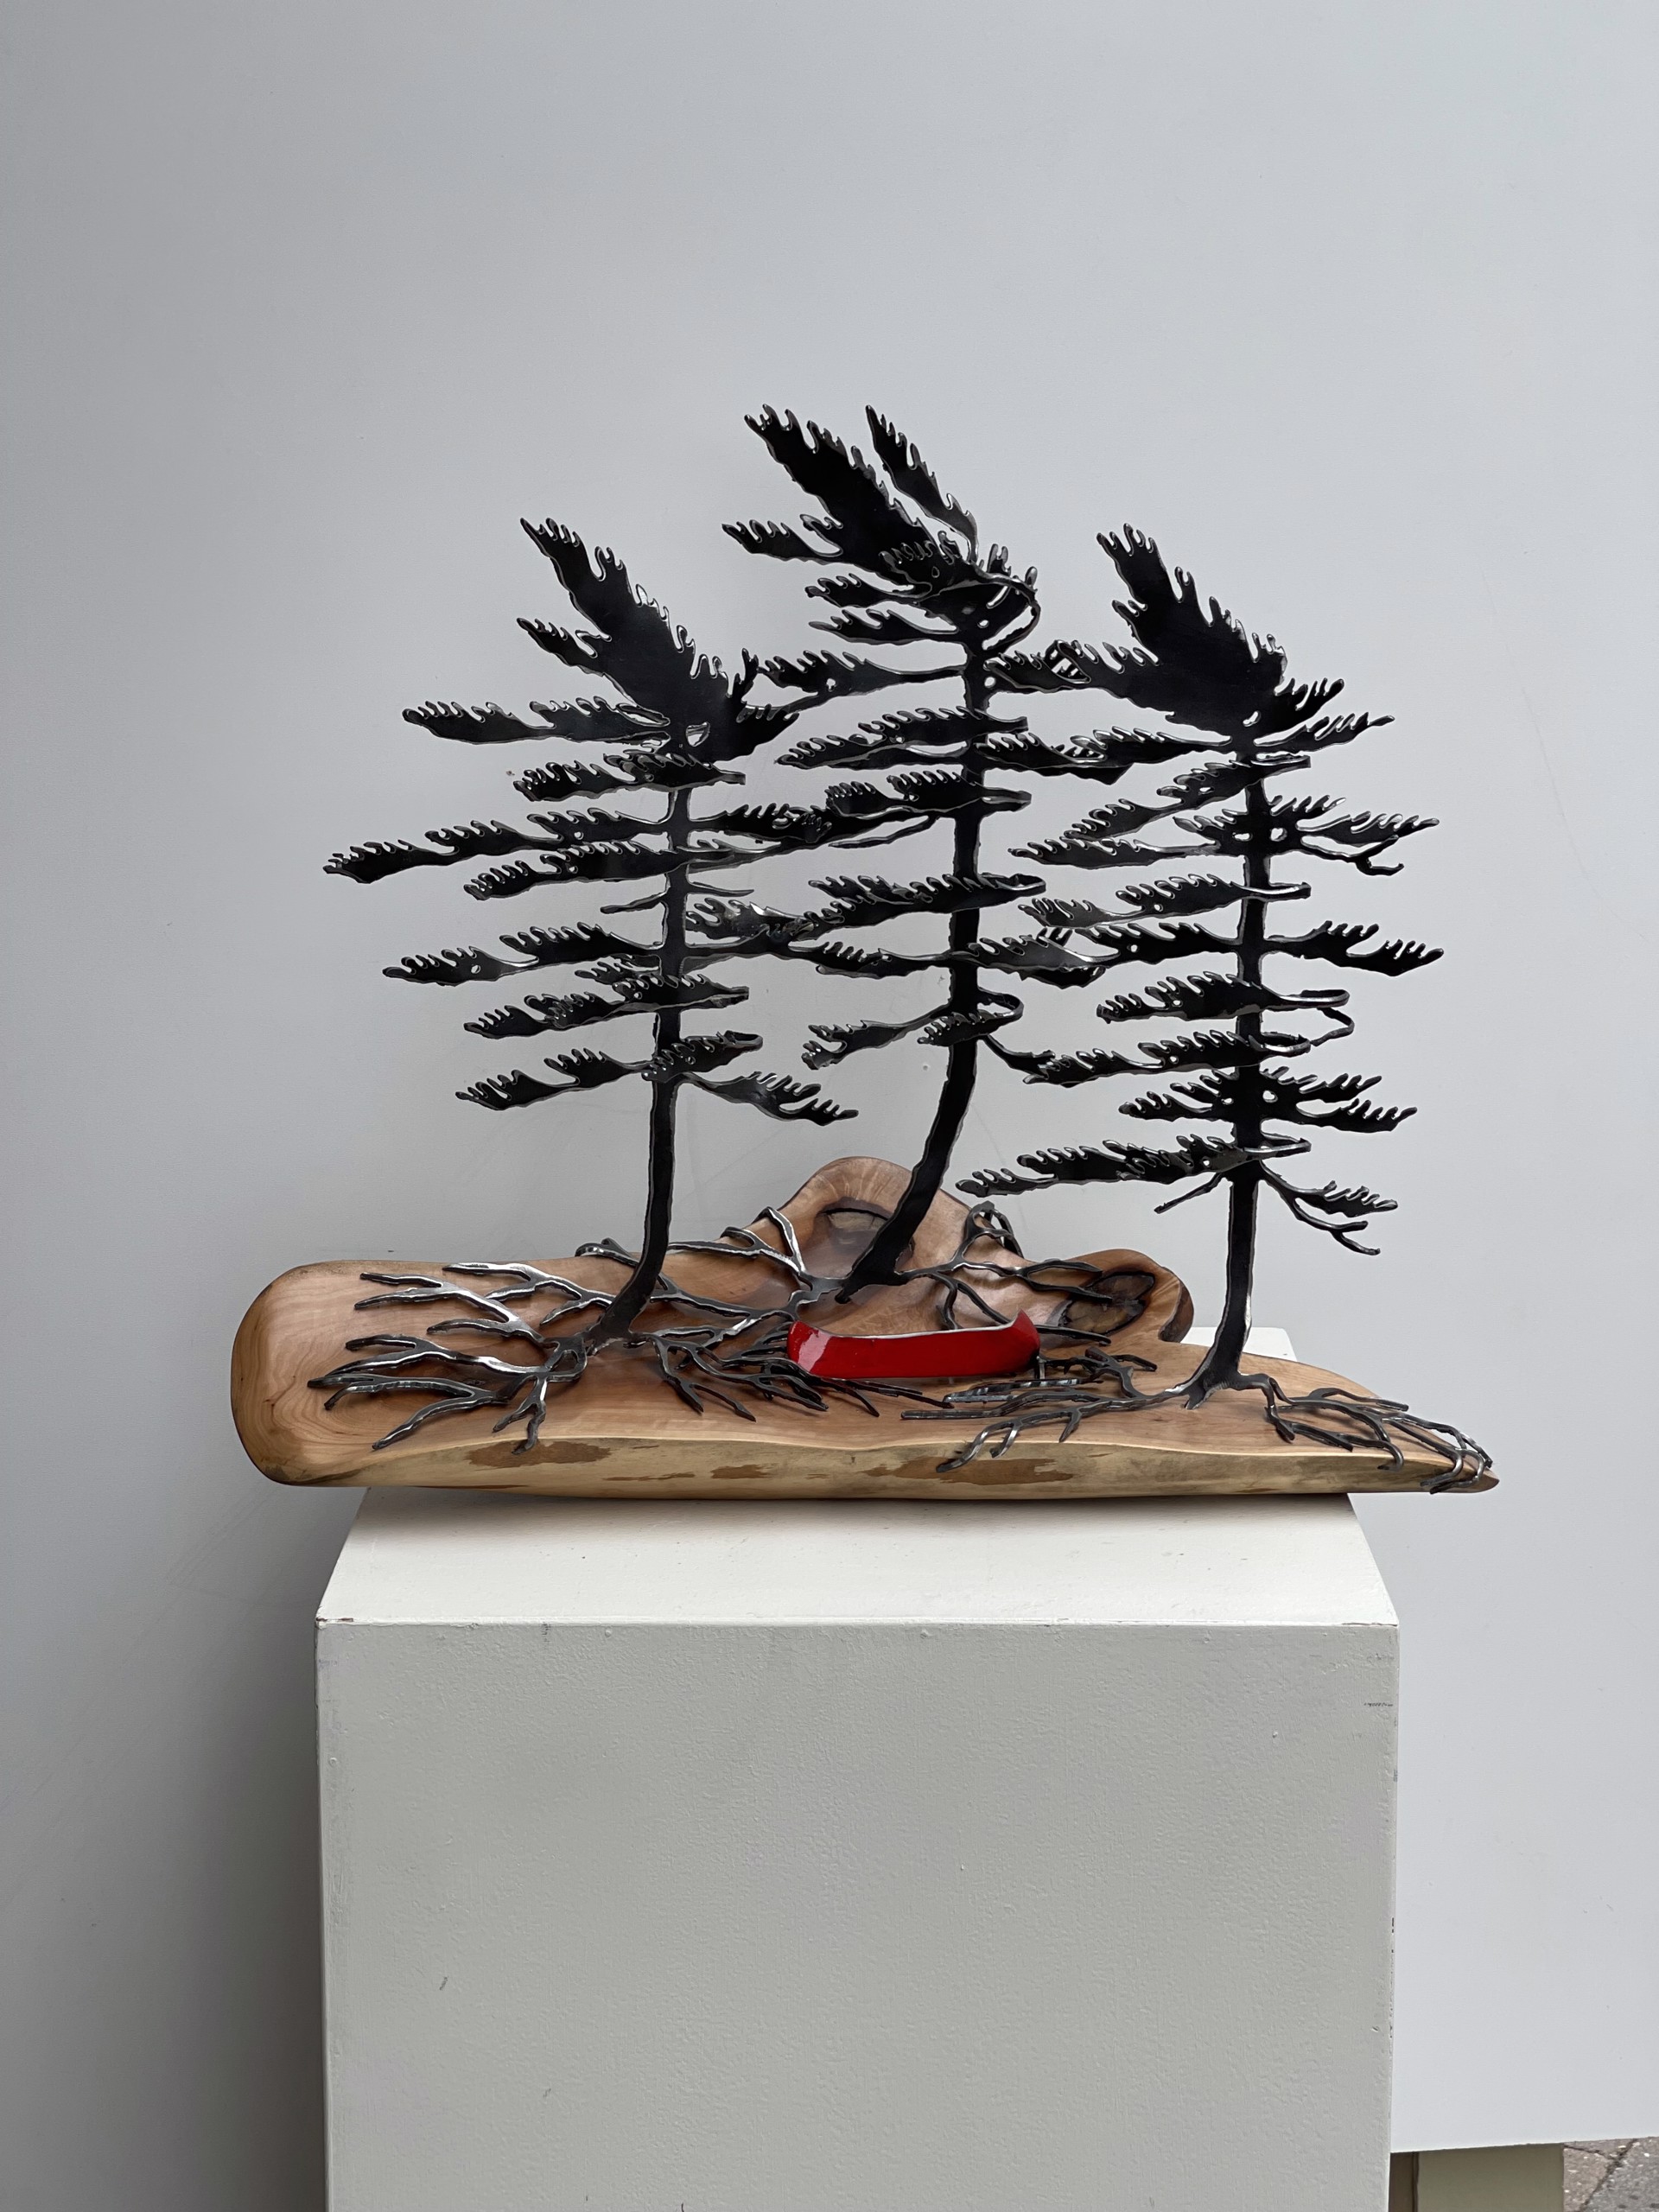 Three Tree Canoe by Cathy Mark